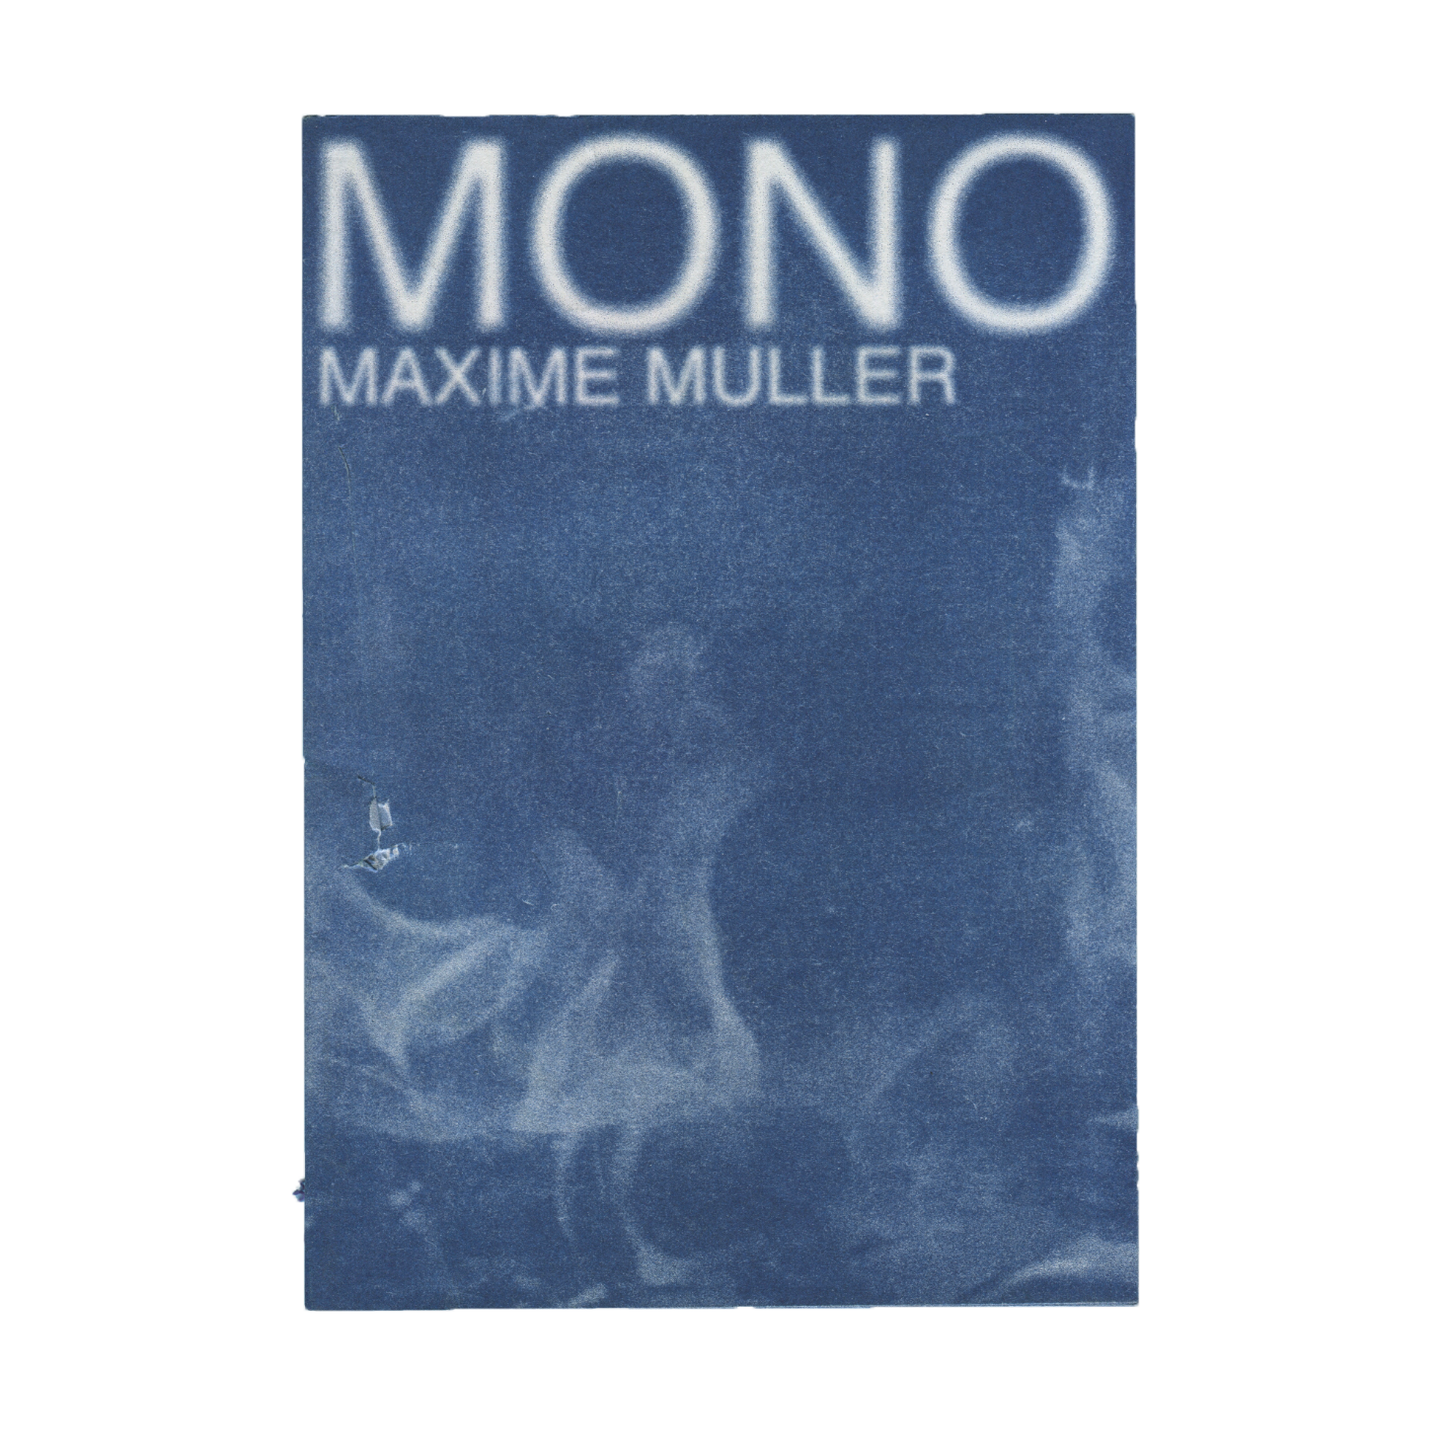 MONO - MAXIME MULLER